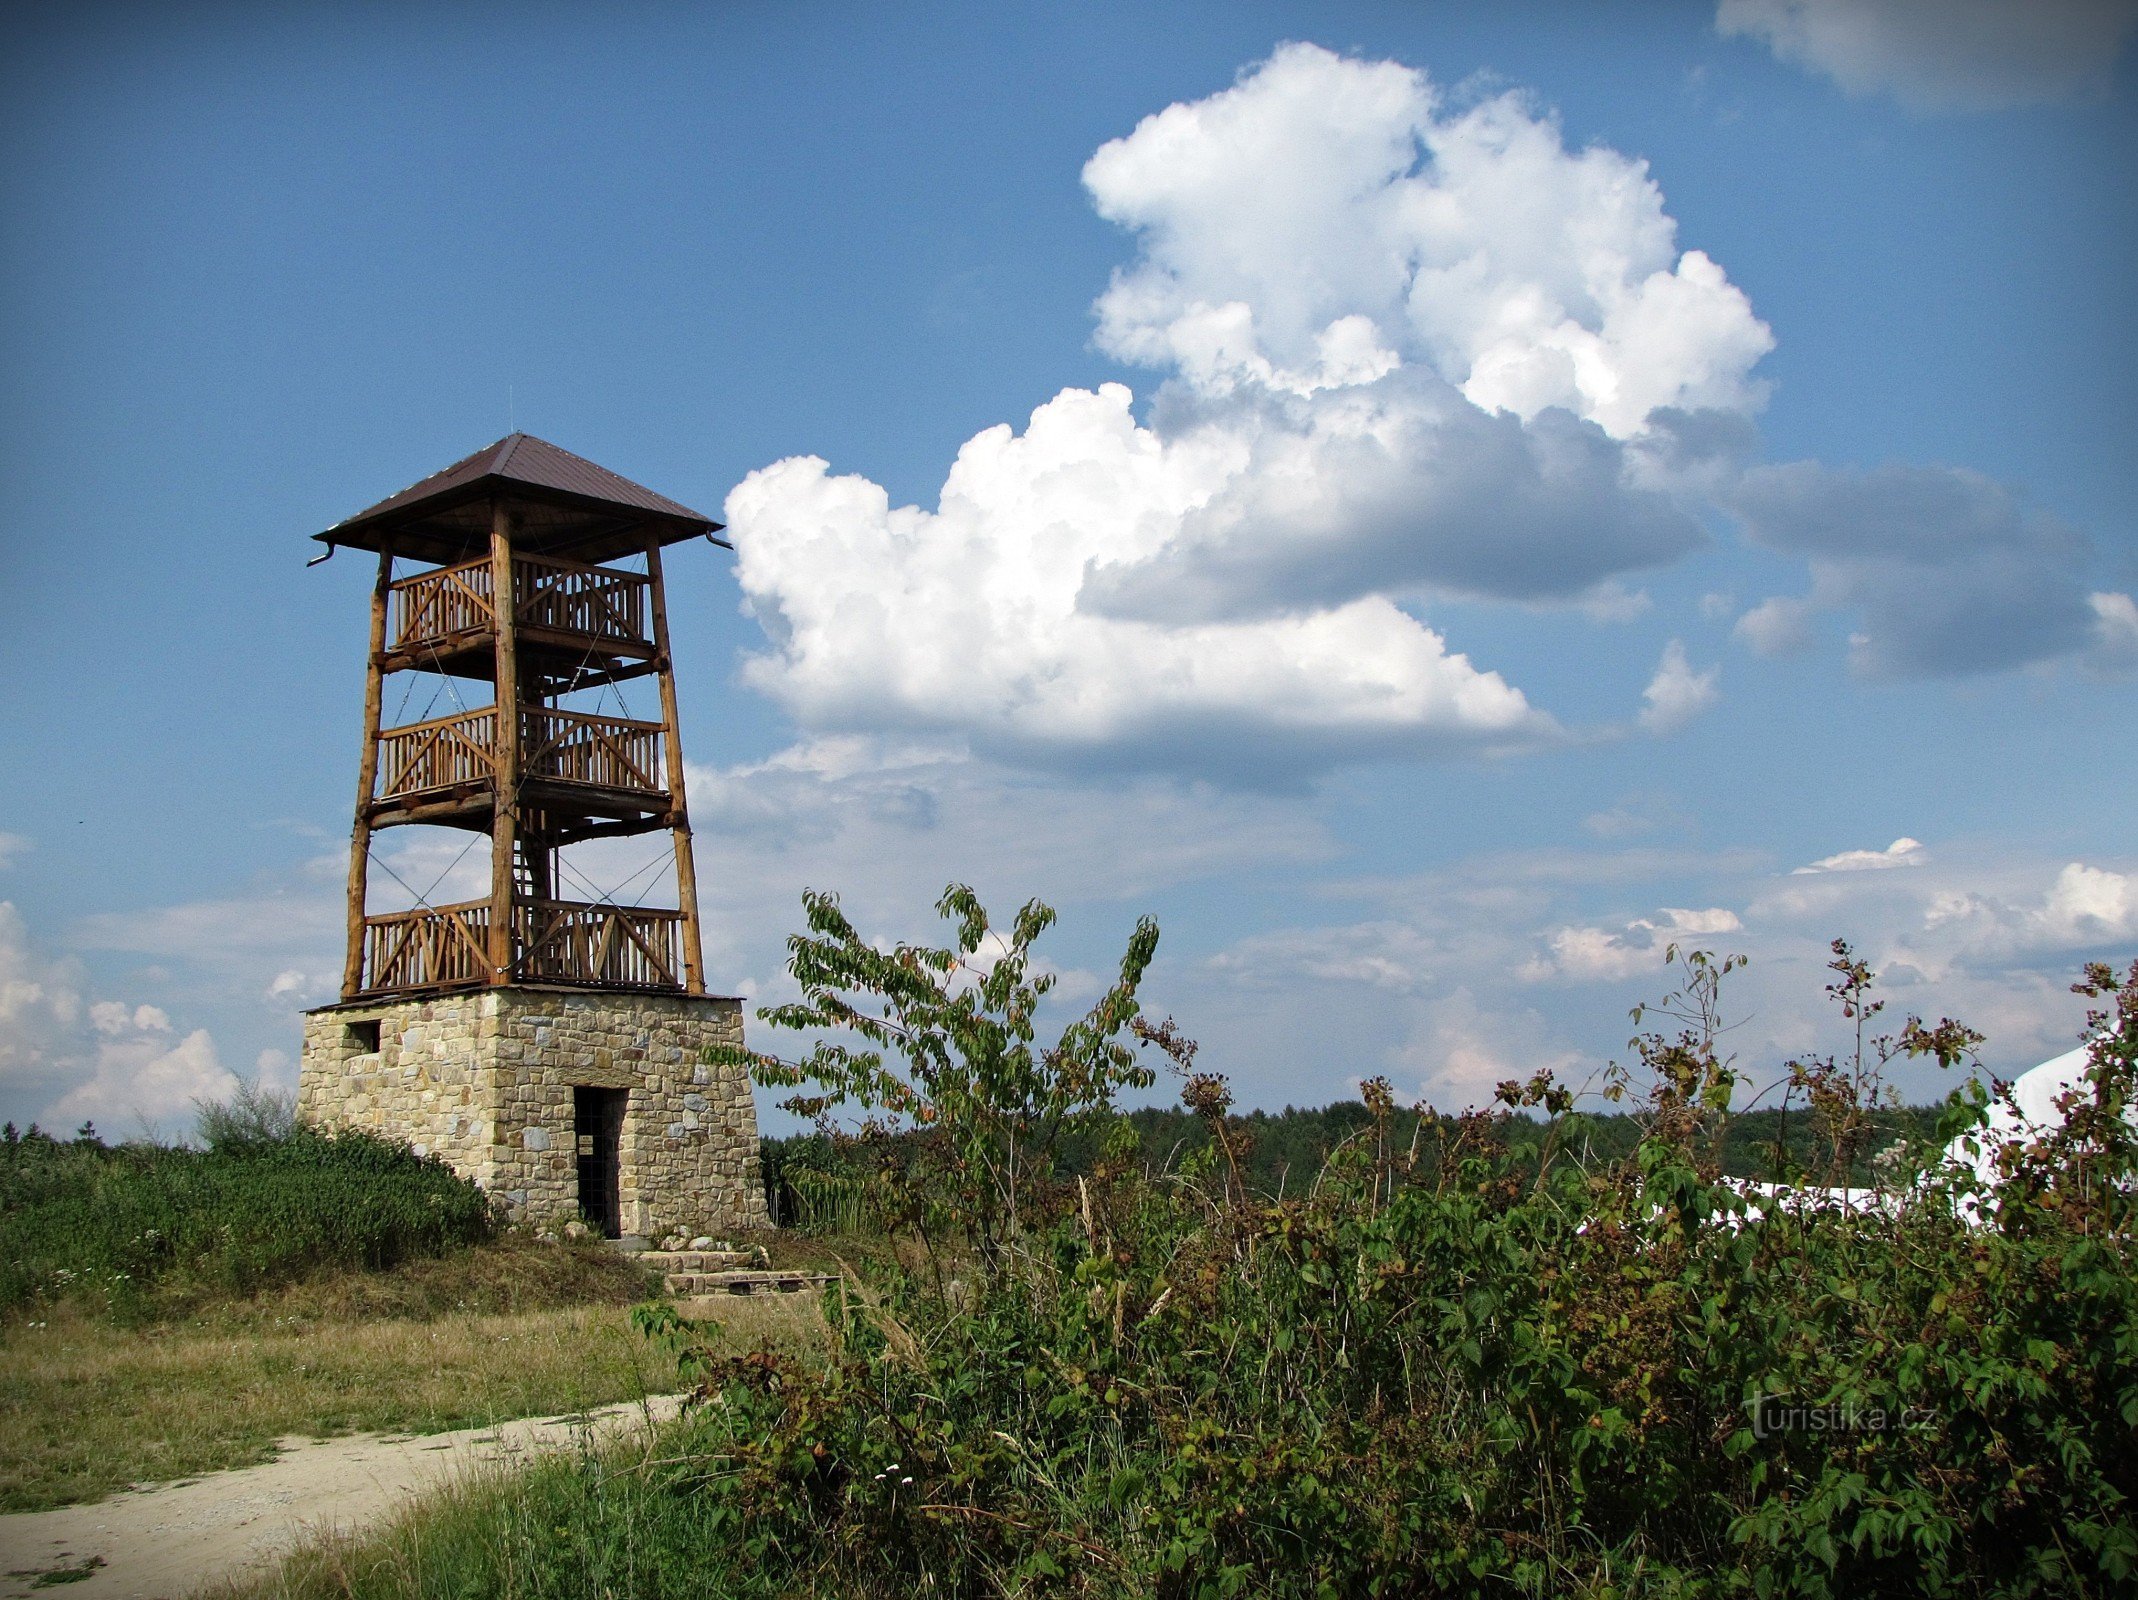 Hostišová - område af udsigtstårnet og pubben